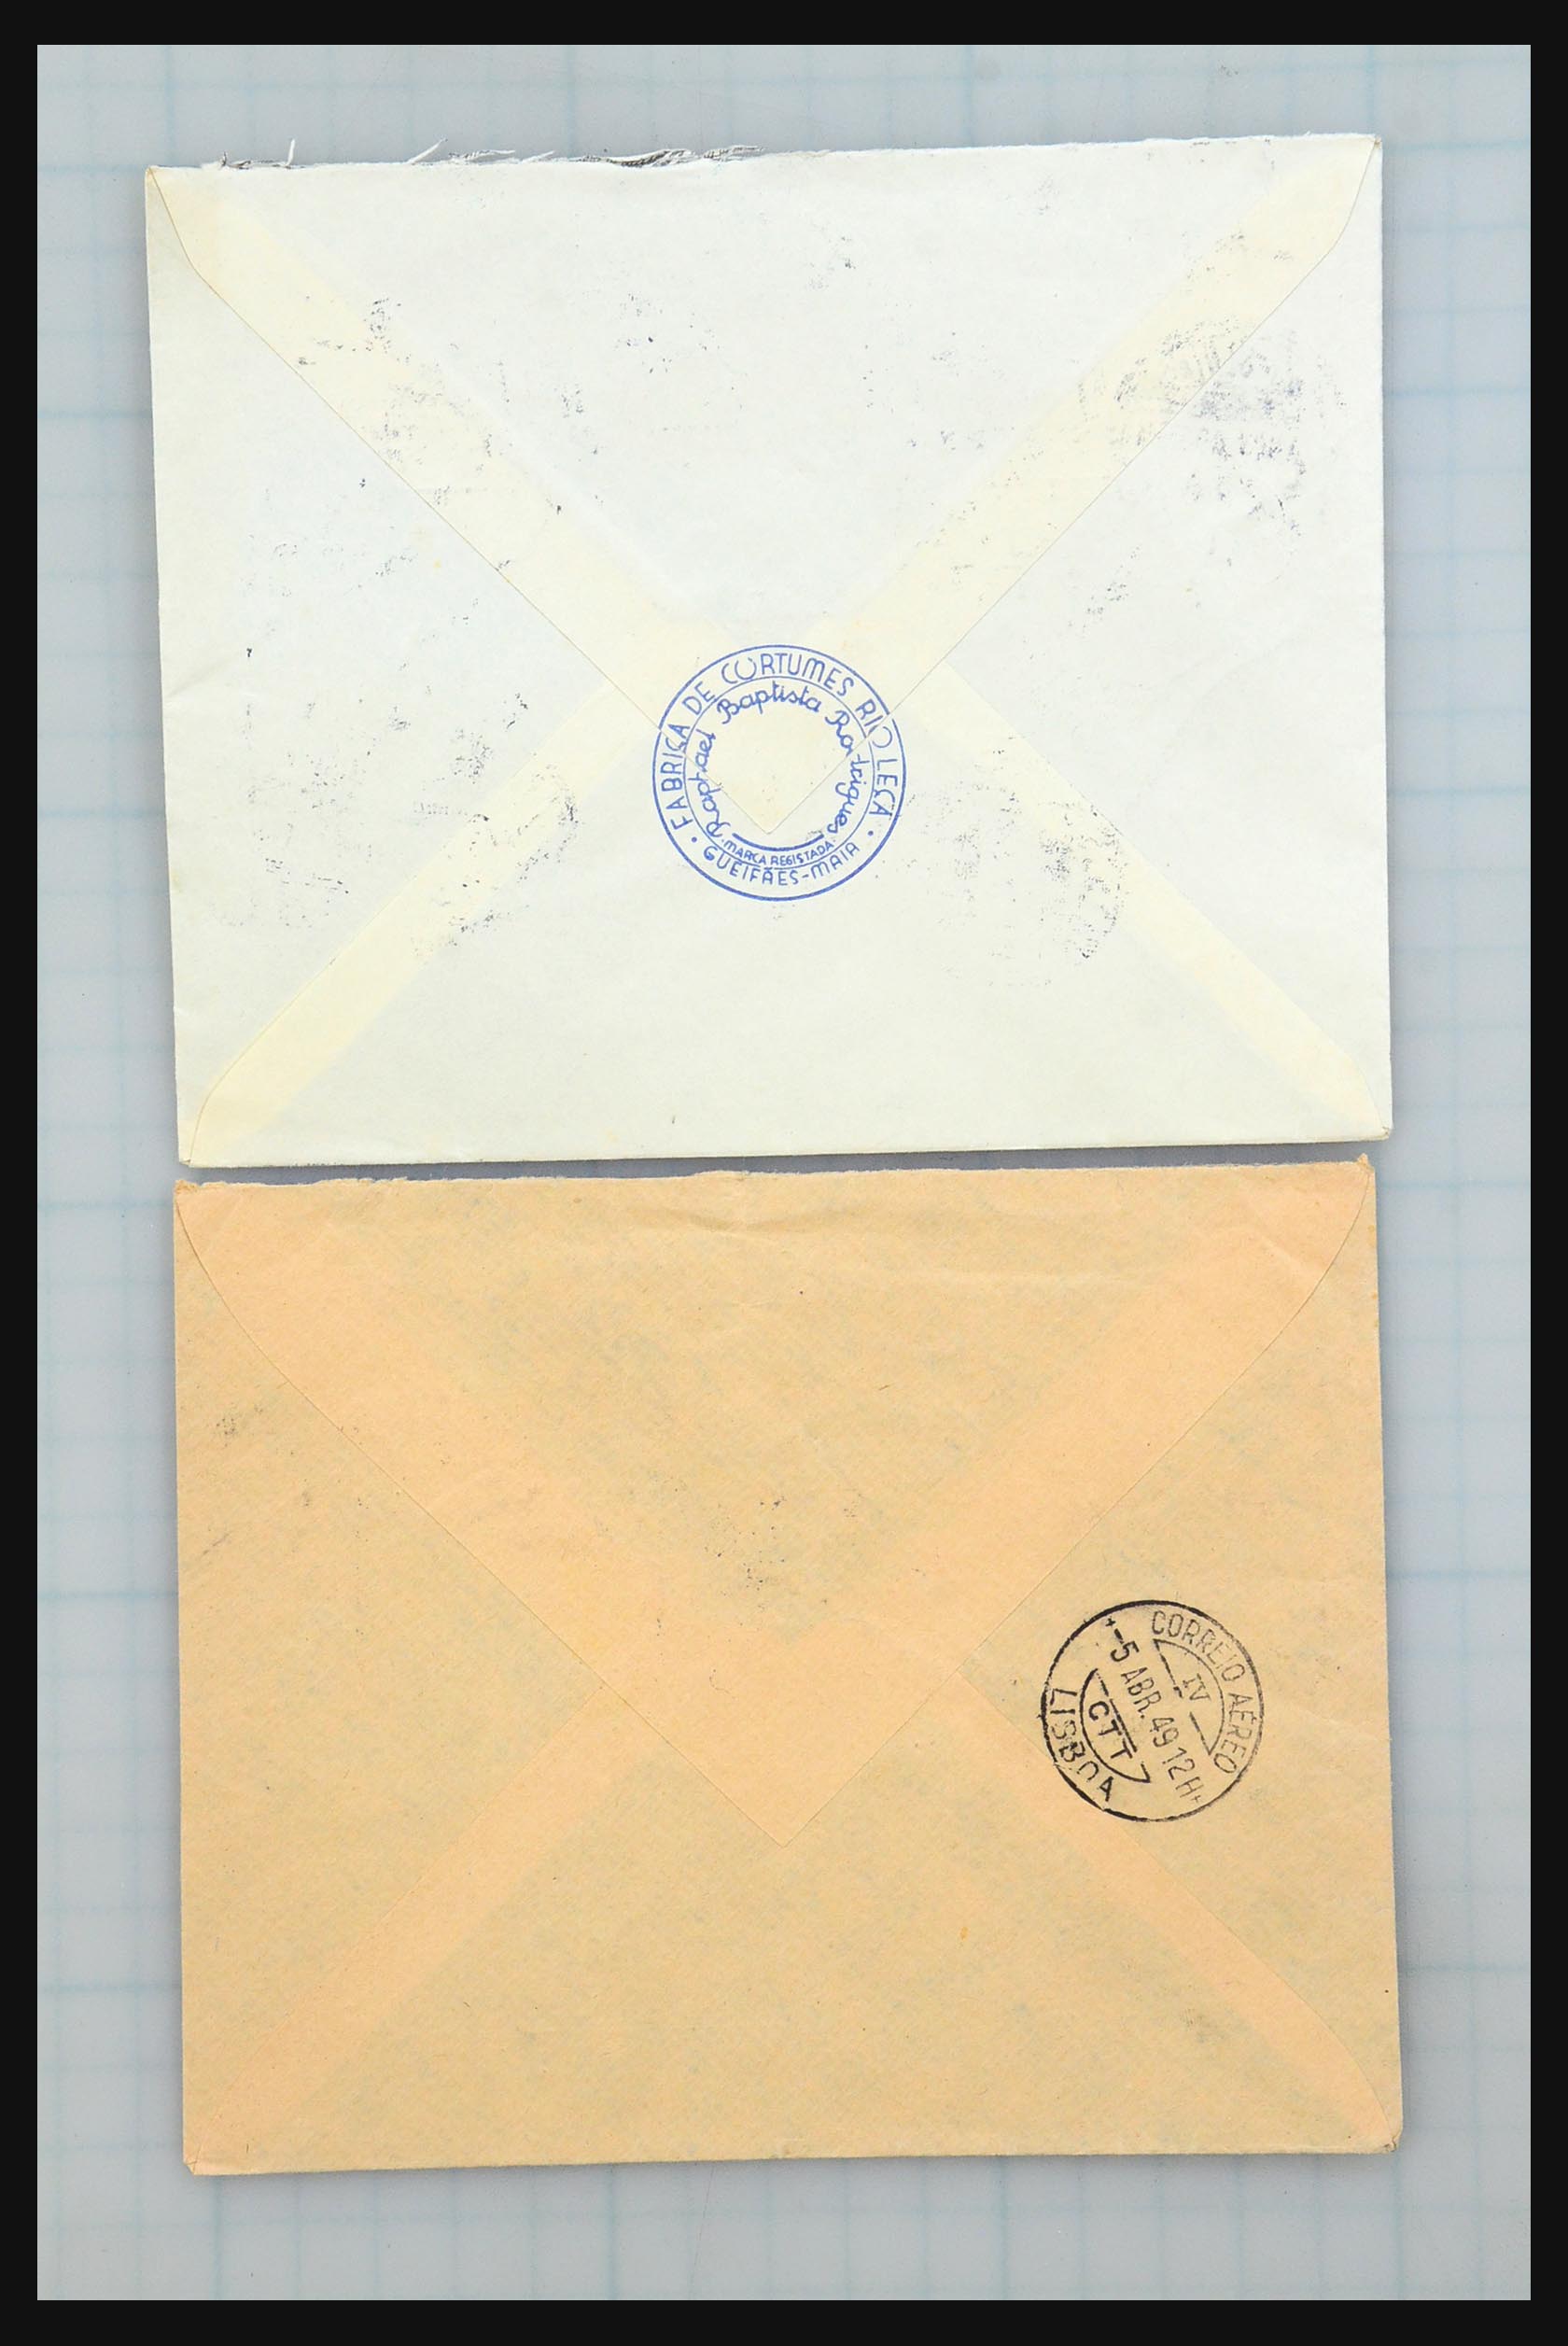 31358 231 - 31358 Portugal/Luxemburg/Griekenland brieven 1880-1960.